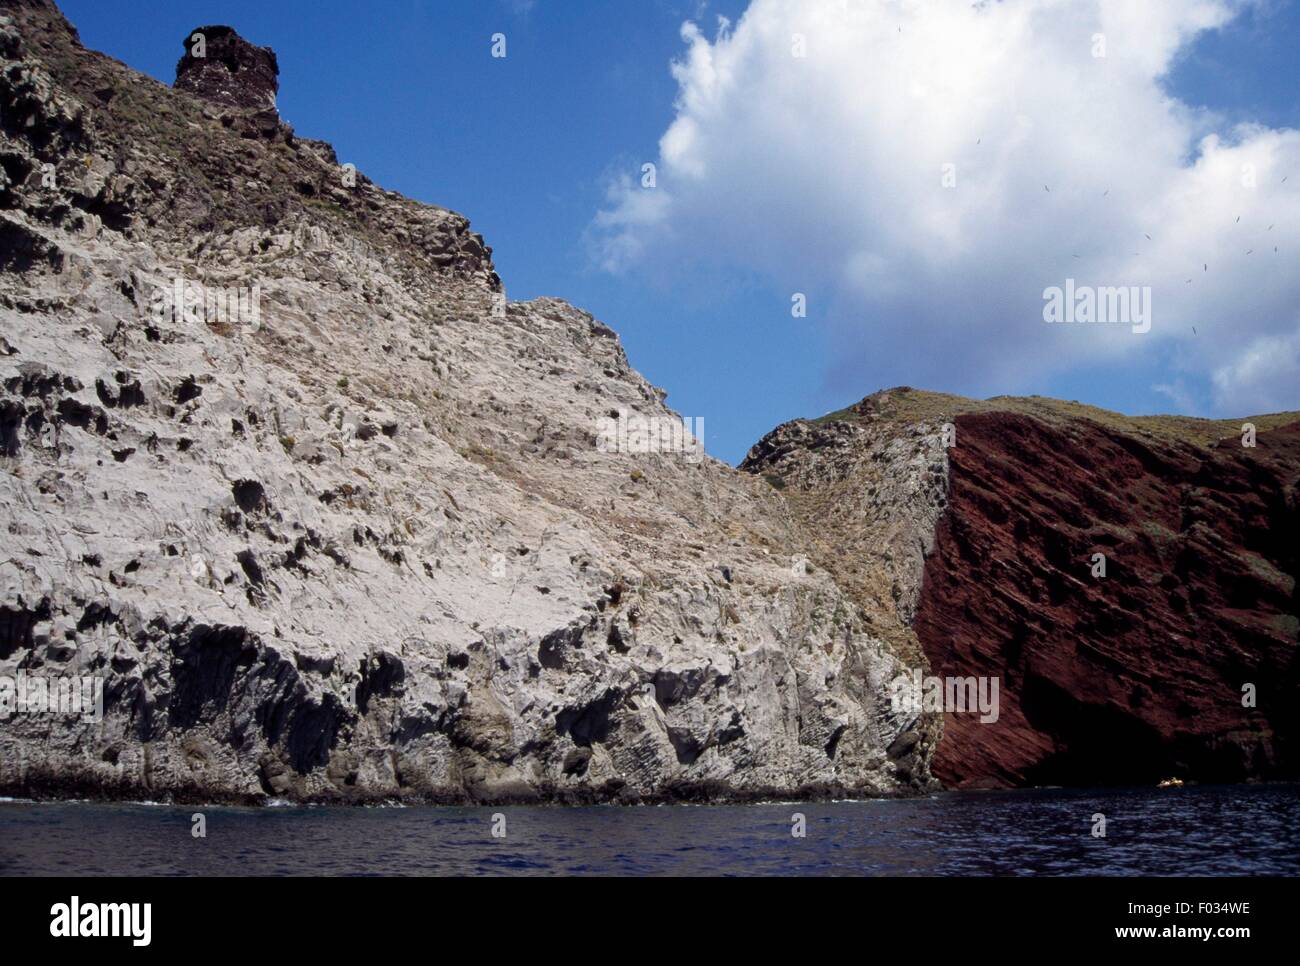 Cliff at Cala Rossa, Capraia Island, Arcipelago Toscano National Park, Tuscany, Italy. Stock Photo